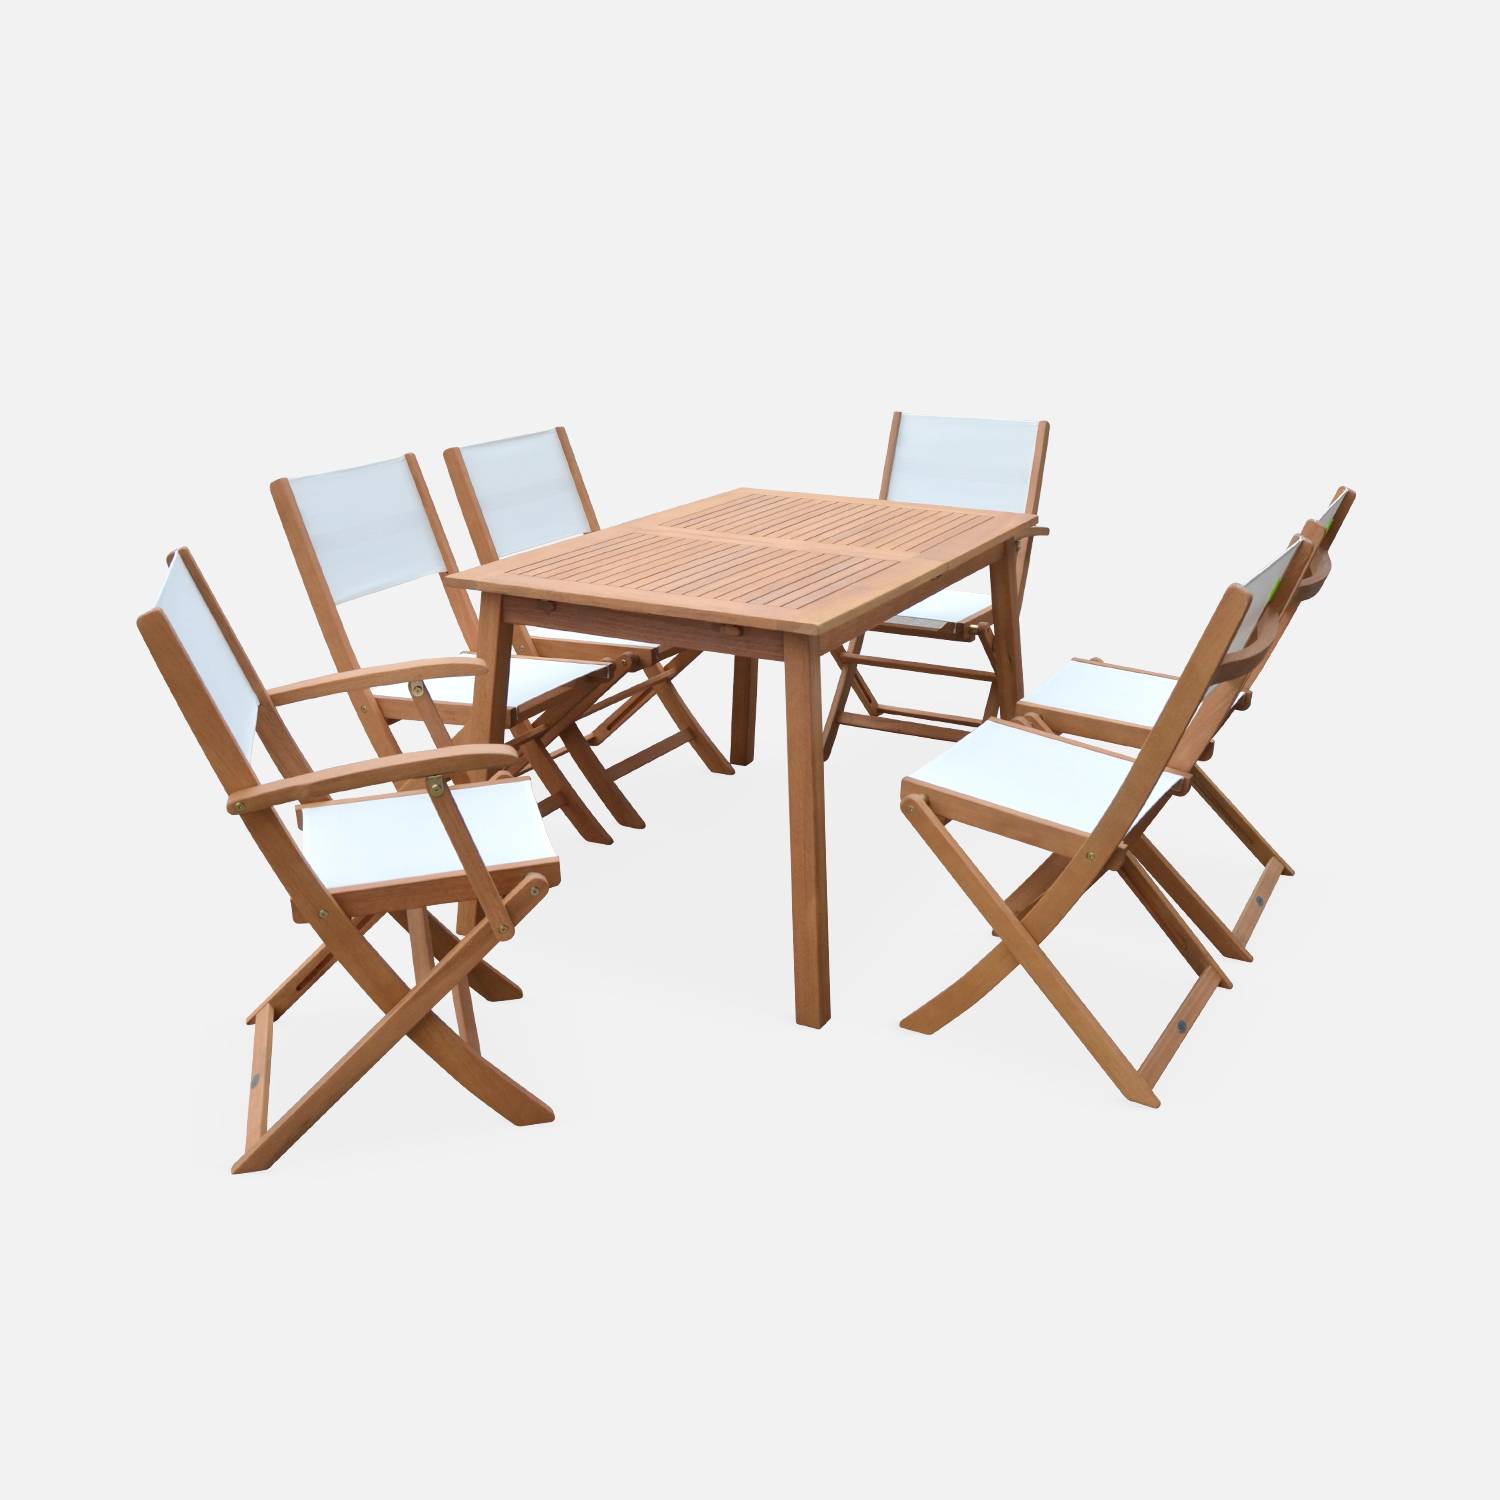 Ausziehbare Gartenmöbel aus Holz - Almeria - Tisch 120/180 cm mit Verlängerung, 2 Sesseln und 4 Stühlen aus geöltem FSC-Eukalyptusholz und weißes Textilene Photo4